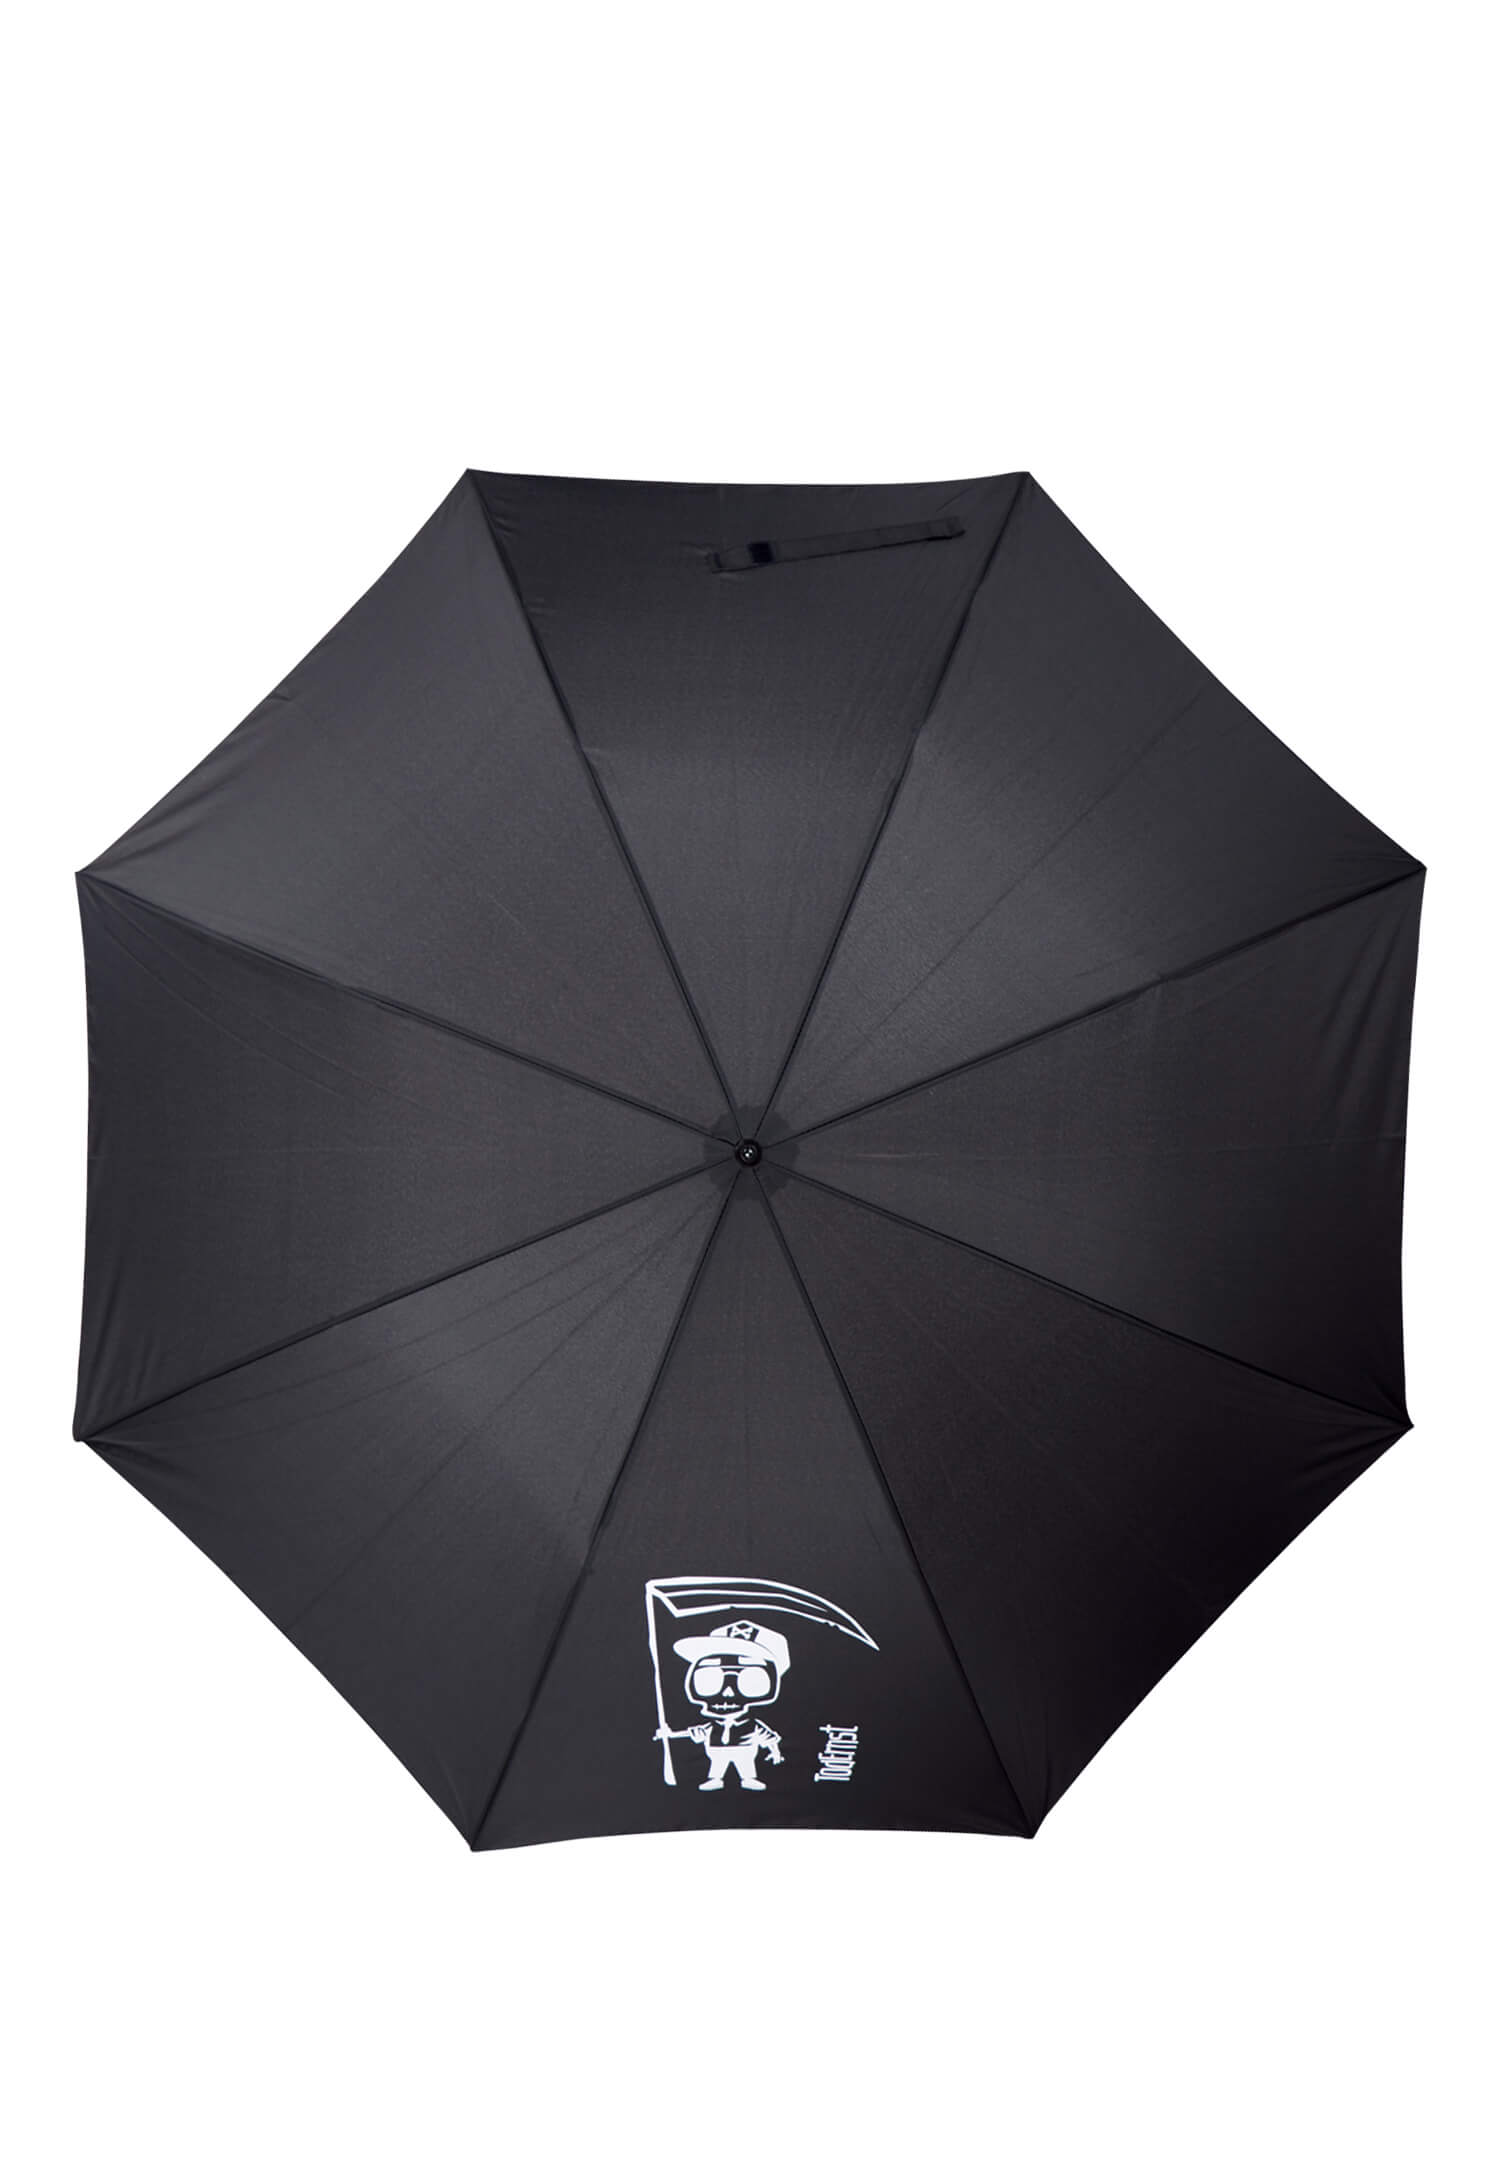 Tod Ernst Regenschirm mit Öffnungsautomatik, Ø 106cm, schwarz